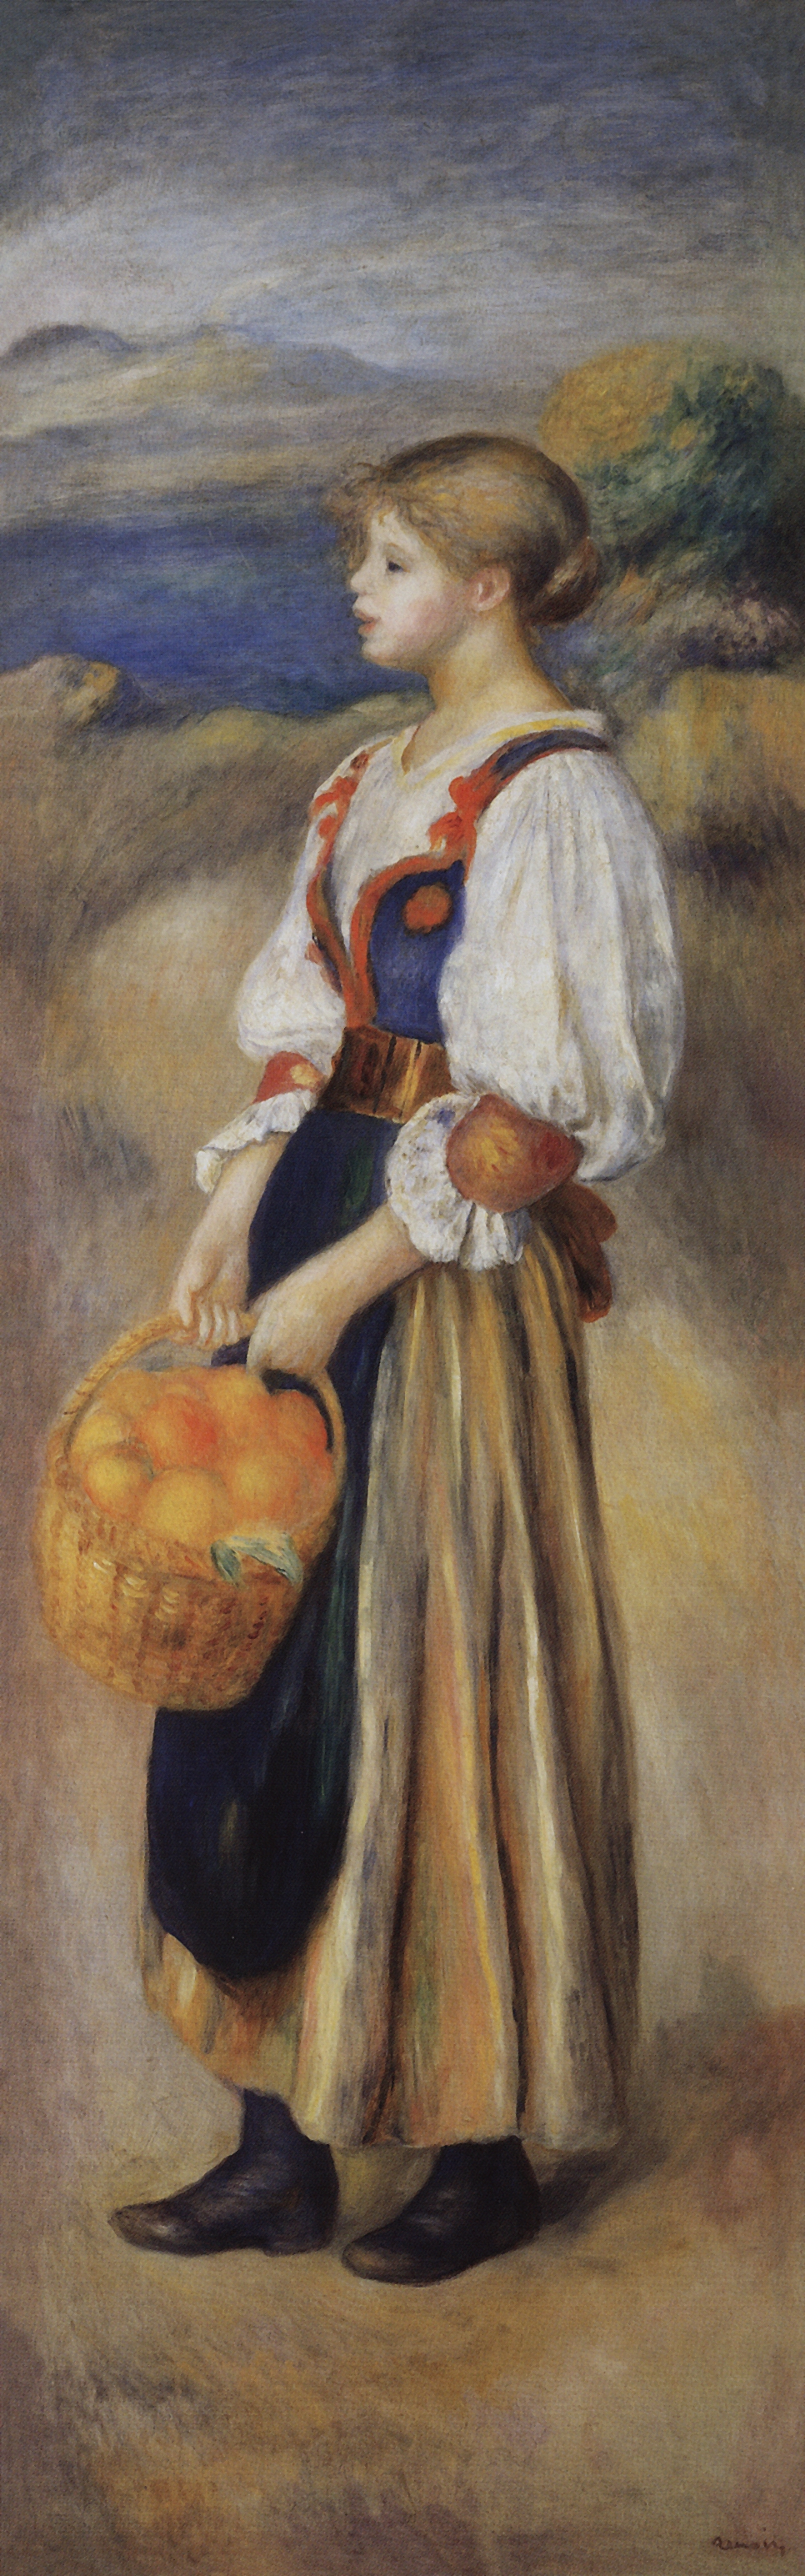 Ренуар. Девушка с корзиной апельсинов. Около 1889